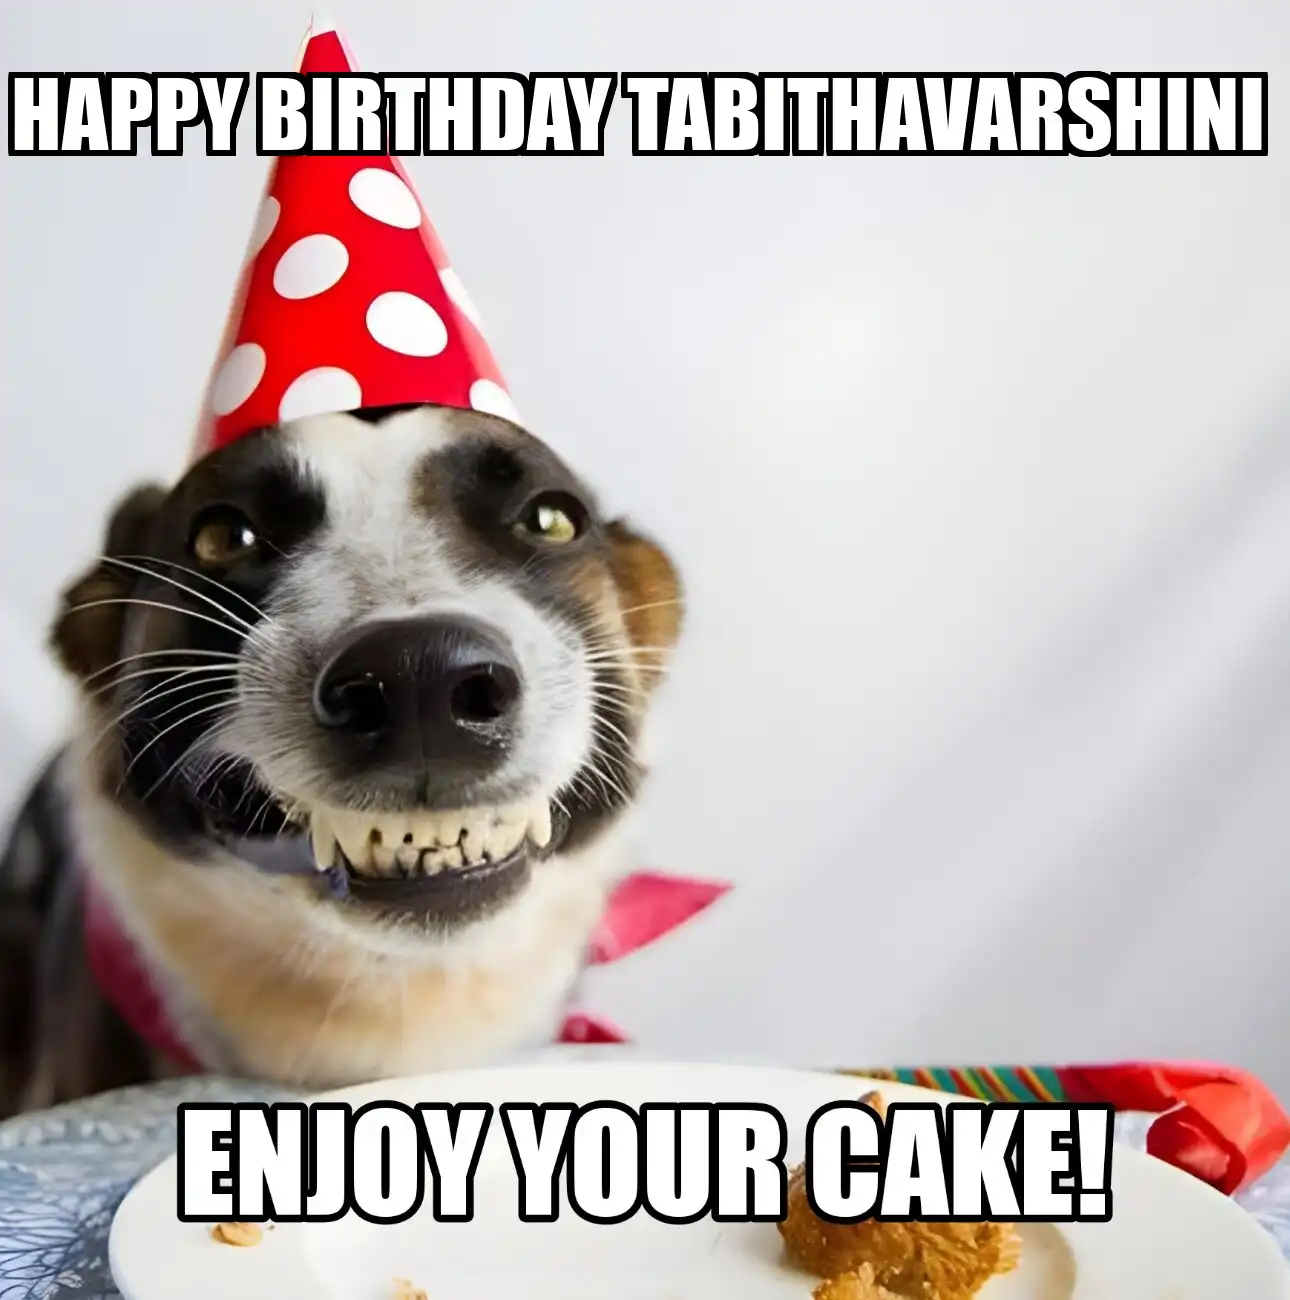 Happy Birthday Tabithavarshini Enjoy Your Cake Dog Meme